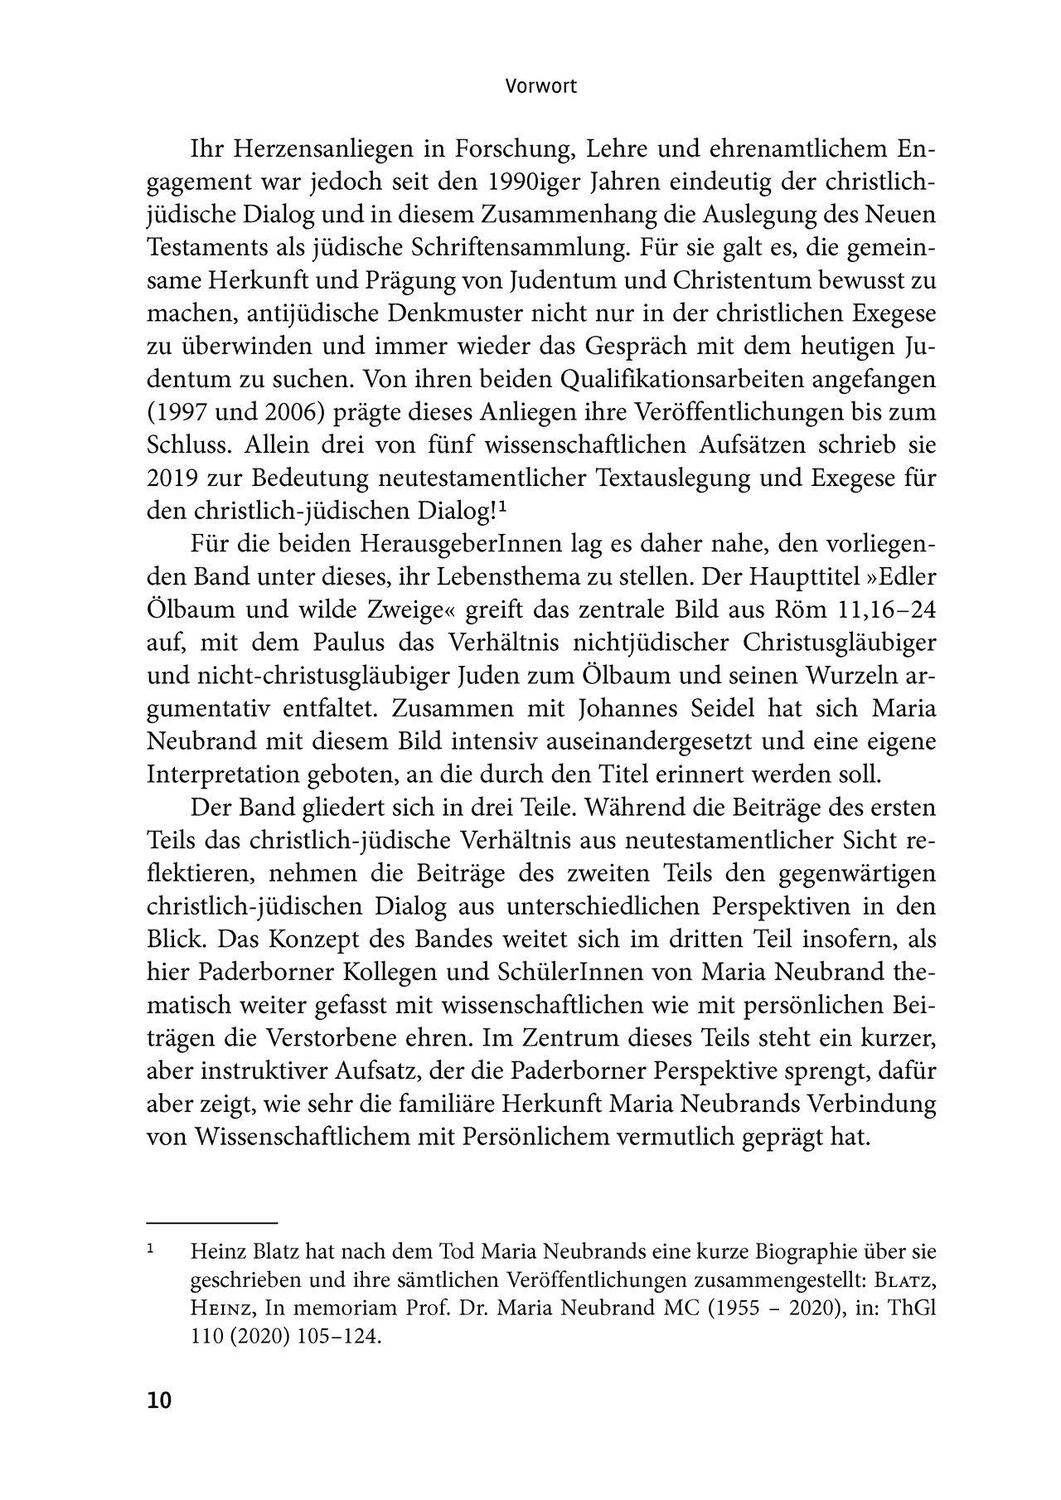 Bild: 9783460001053 | "Edler Ölbaum und wilde Zweige (Röm 11,16-24)" | Heinz Blatz (u. a.)